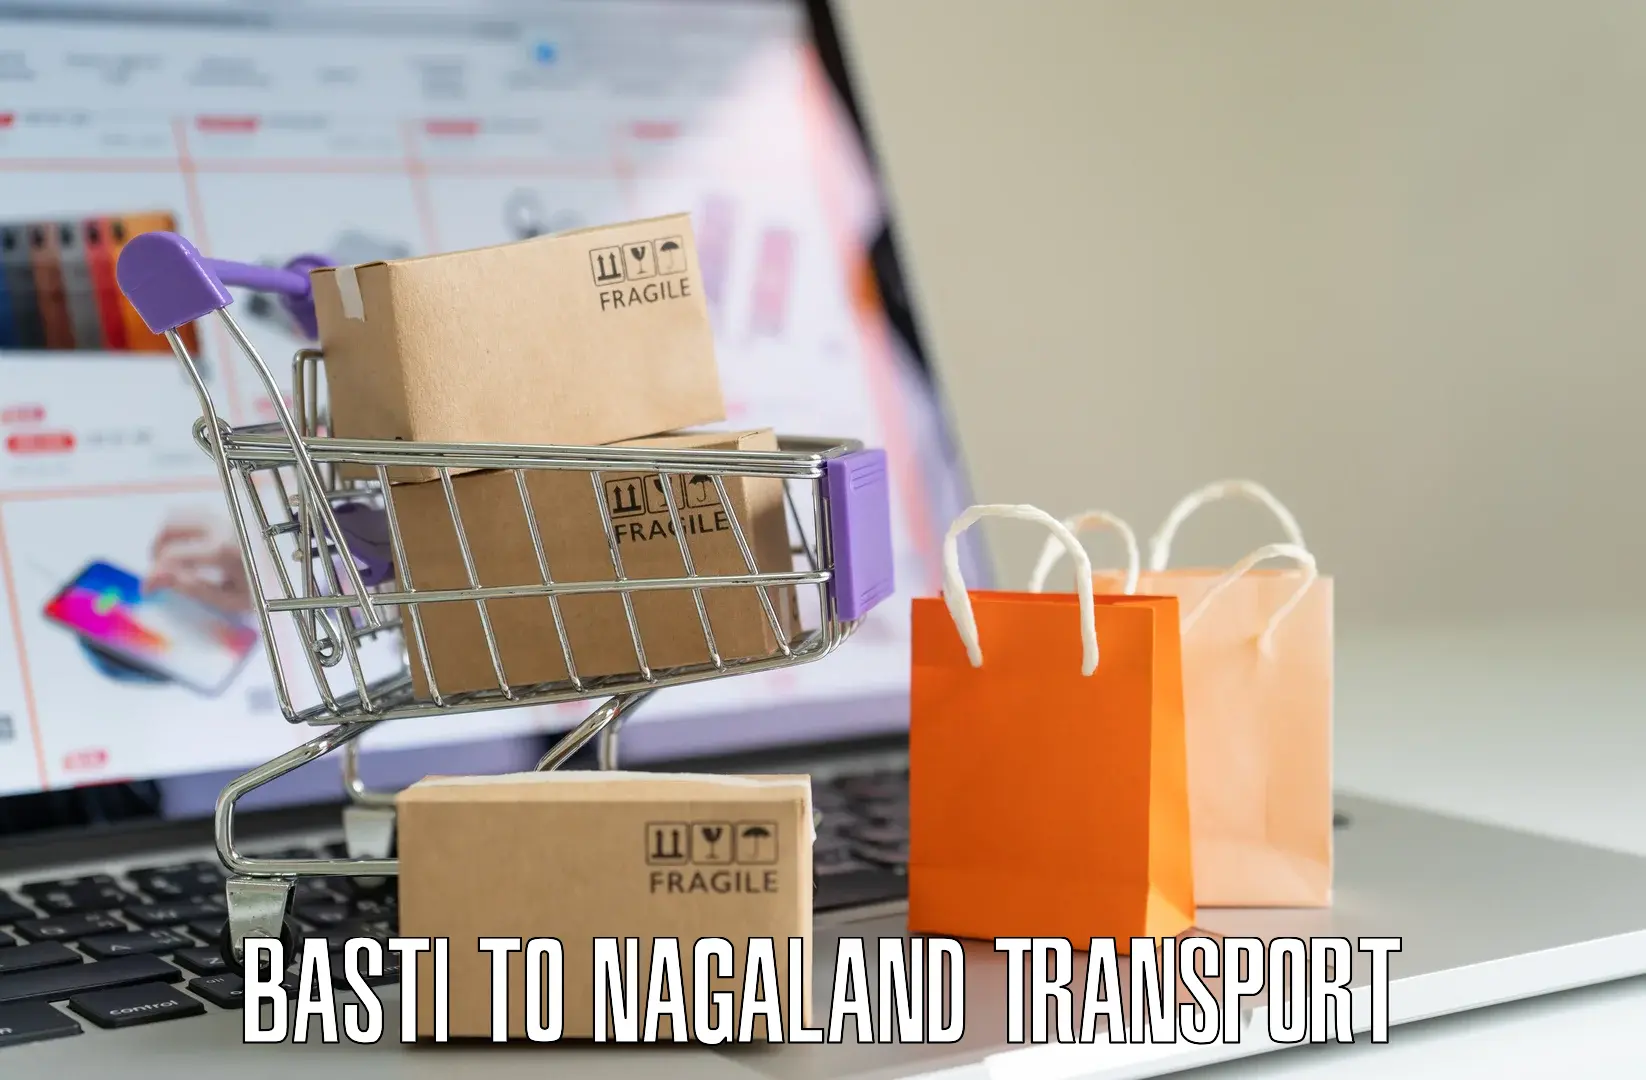 Nearby transport service Basti to NIT Nagaland